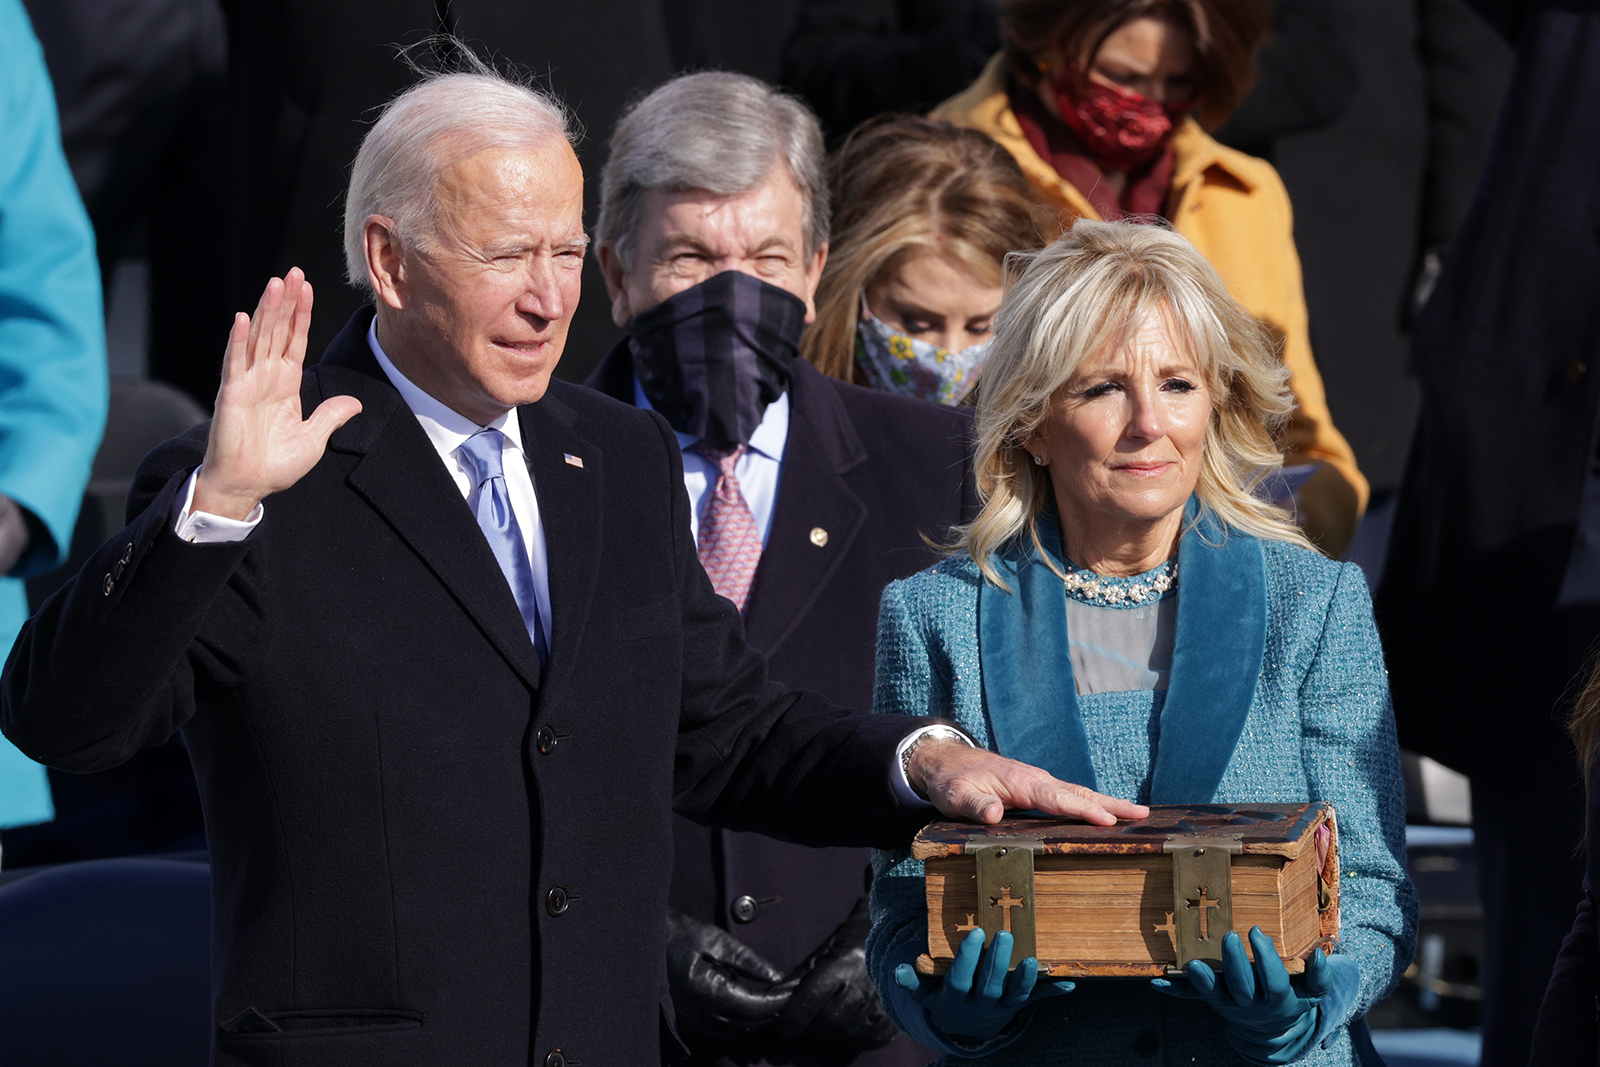  Tổng thống thứ 46 của Mỹ Joe Biden tuyên thệ nhậm chức trưa 20-1-2021 theo giờ Washington D.C. Ảnh: CNN